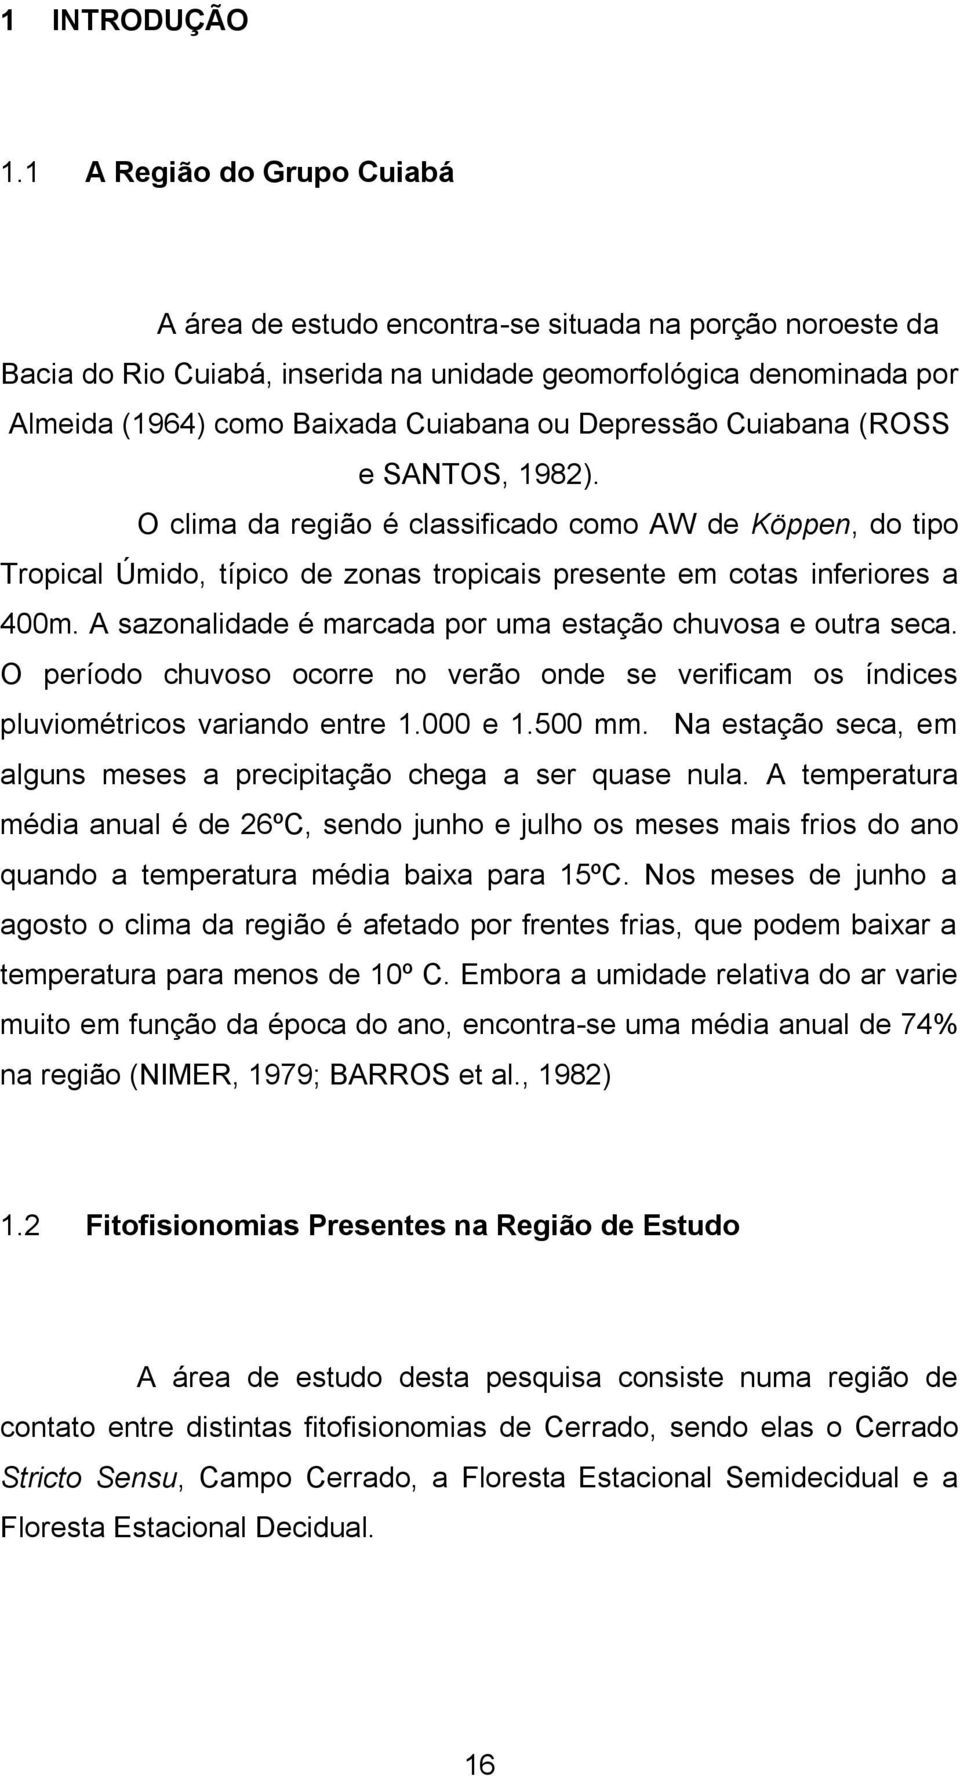 Depressão Cuiabana (ROSS e SANTOS, 1982). O clima da região é classificado como AW de Köppen, do tipo Tropical Úmido, típico de zonas tropicais presente em cotas inferiores a 400m.